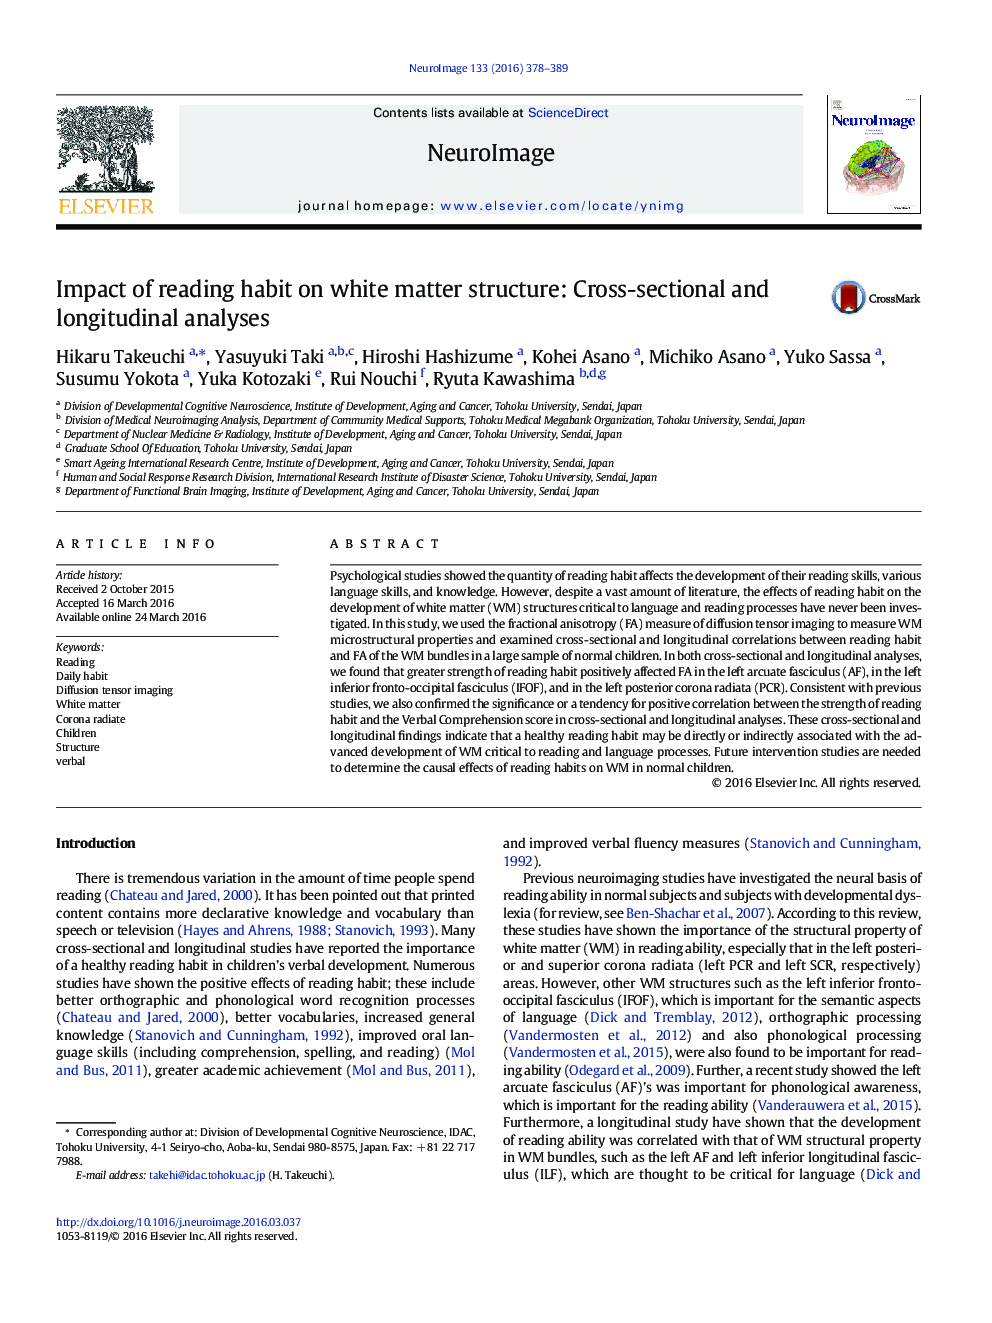 تاثیر عادت خواندن بر ساختار ماده سفید: تجزیه و تحلیل مقطعی و طولی 